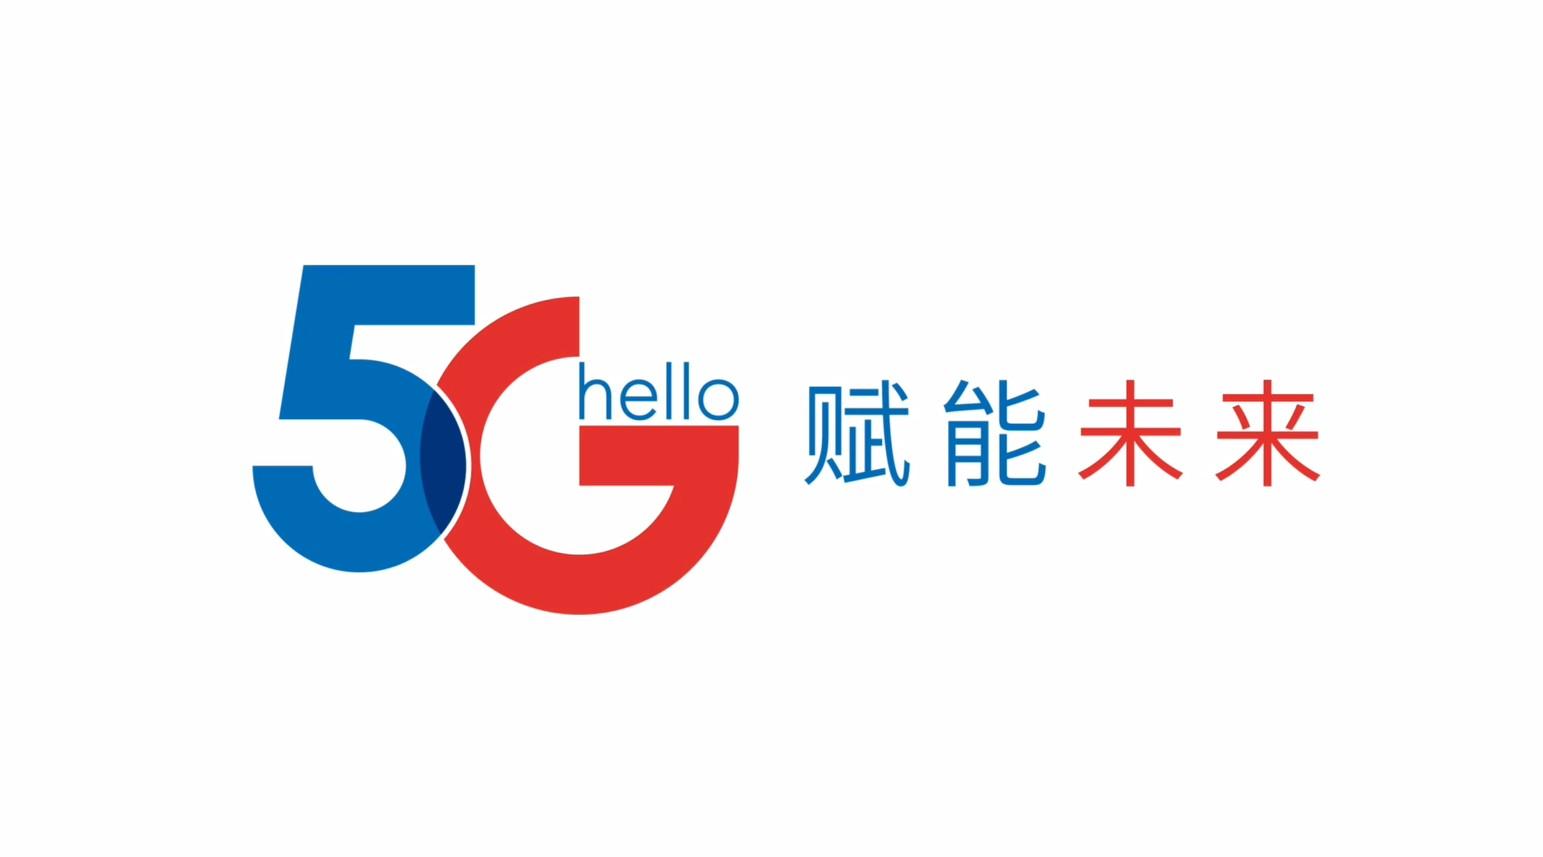 中国电信 - Hello  5G  赋能未来